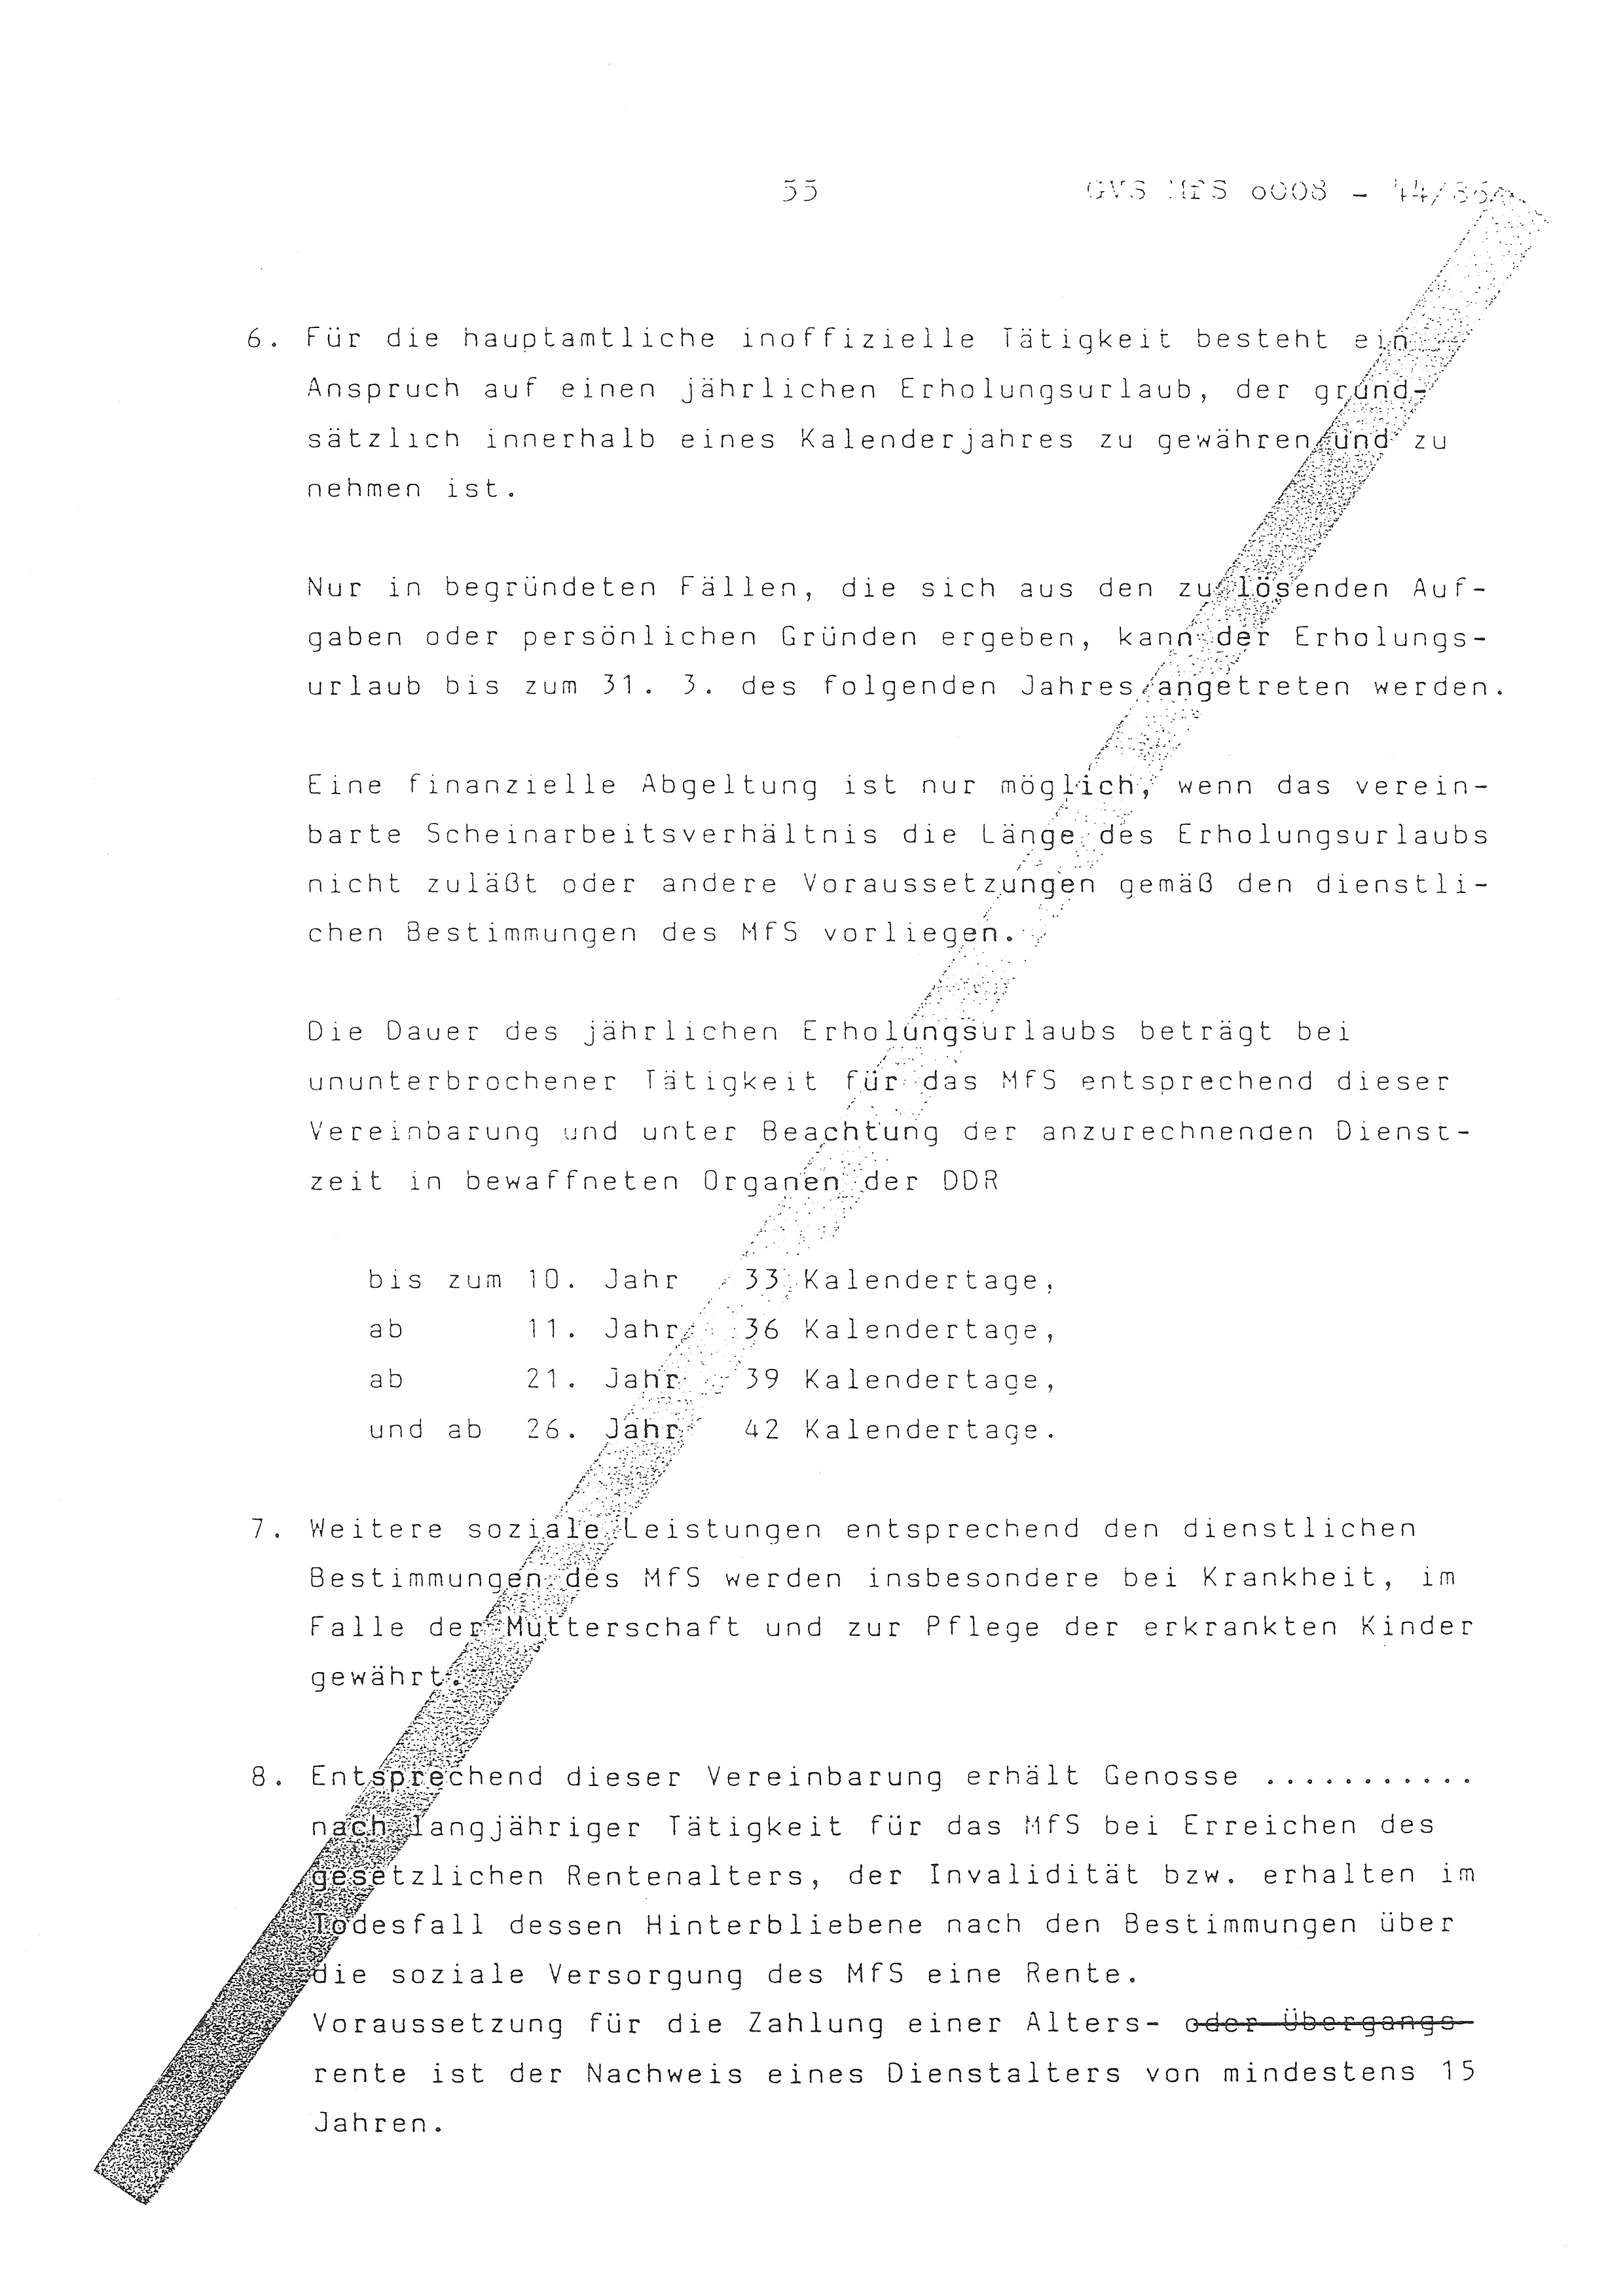 2. Durchführungsbestimmung zur Richtlinie 1/79 über die Arbeit mit hauptamtlichen Mitarbeitern des MfS (HIM), Deutsche Demokratische Republik (DDR), Ministerium für Staatssicherheit (MfS), Der Minister (Mielke), Geheime Verschlußsache (GVS) ooo8-44/86, Berlin 1986, Seite 55 (2. DB RL 1/79 DDR MfS Min. GVS ooo8-44/86 1986, S. 55)